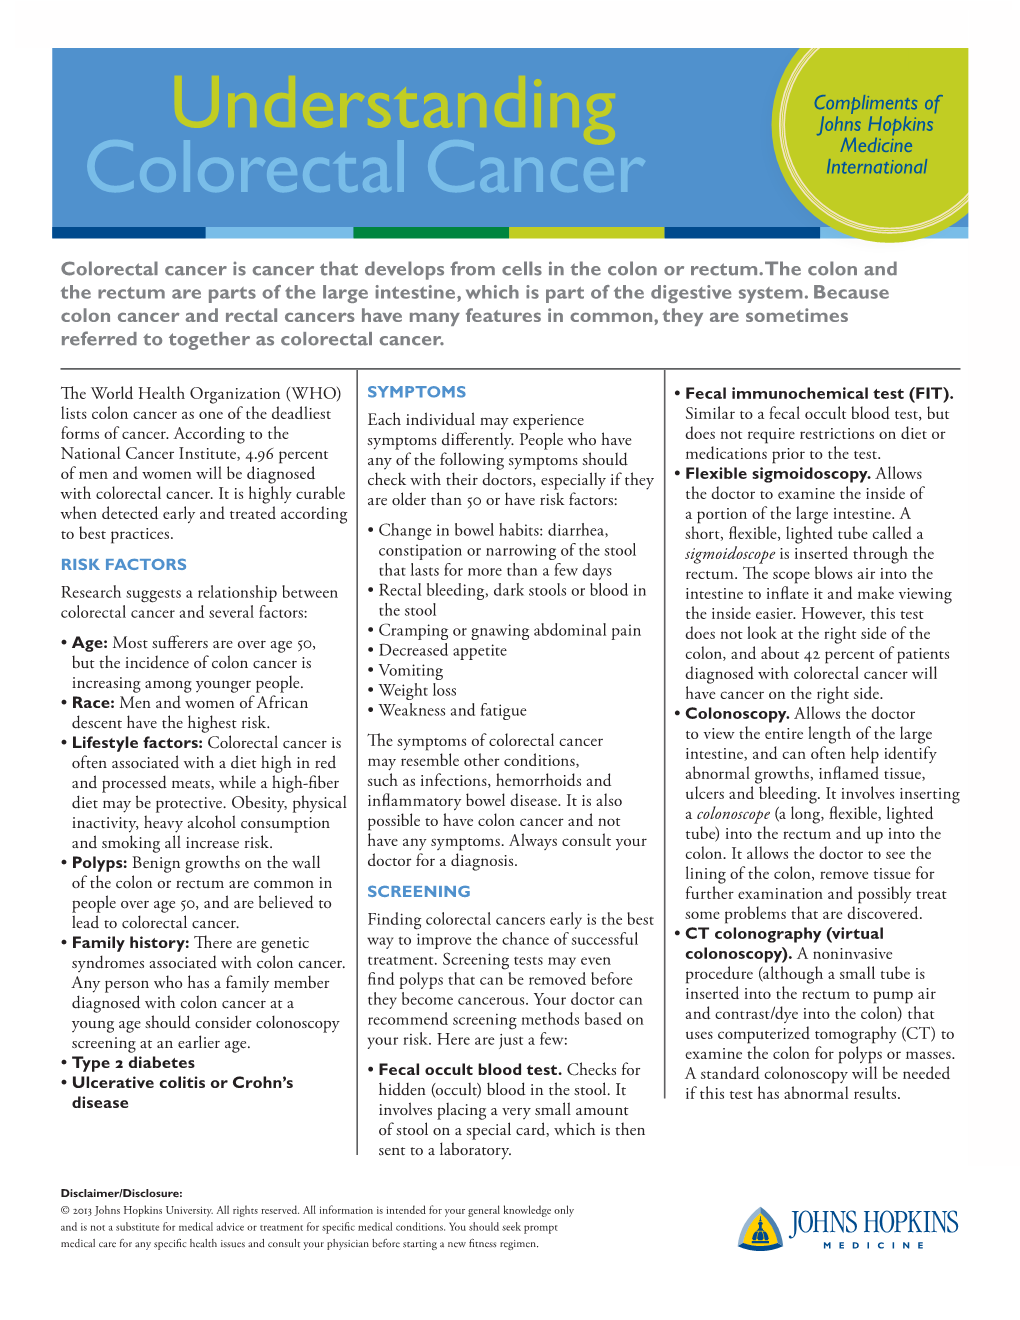 Understanding Colorectal Cancer